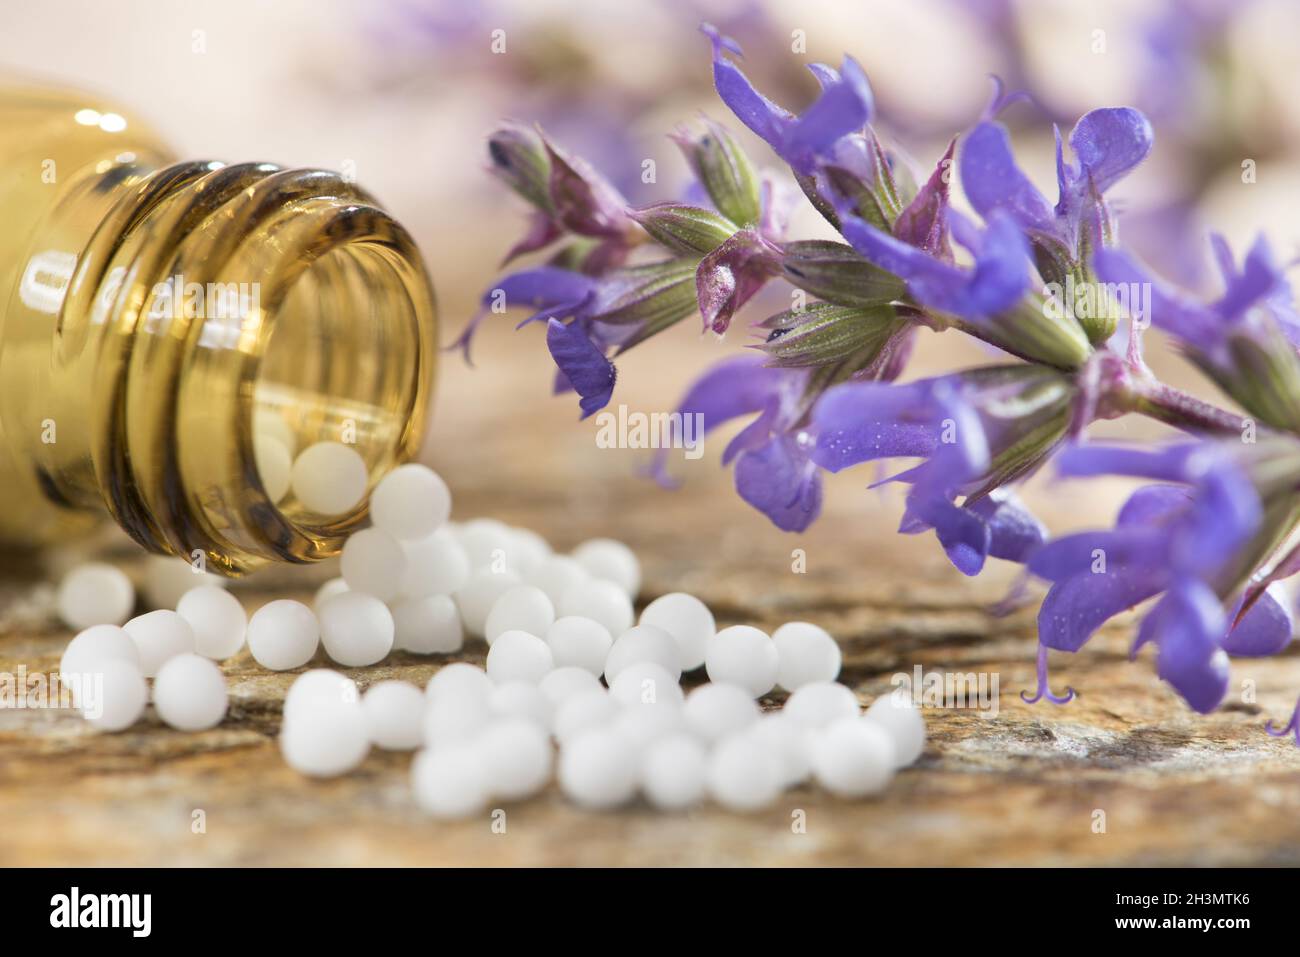 Medicina alternativa con píldoras herbarias y homeopáticas Foto de stock